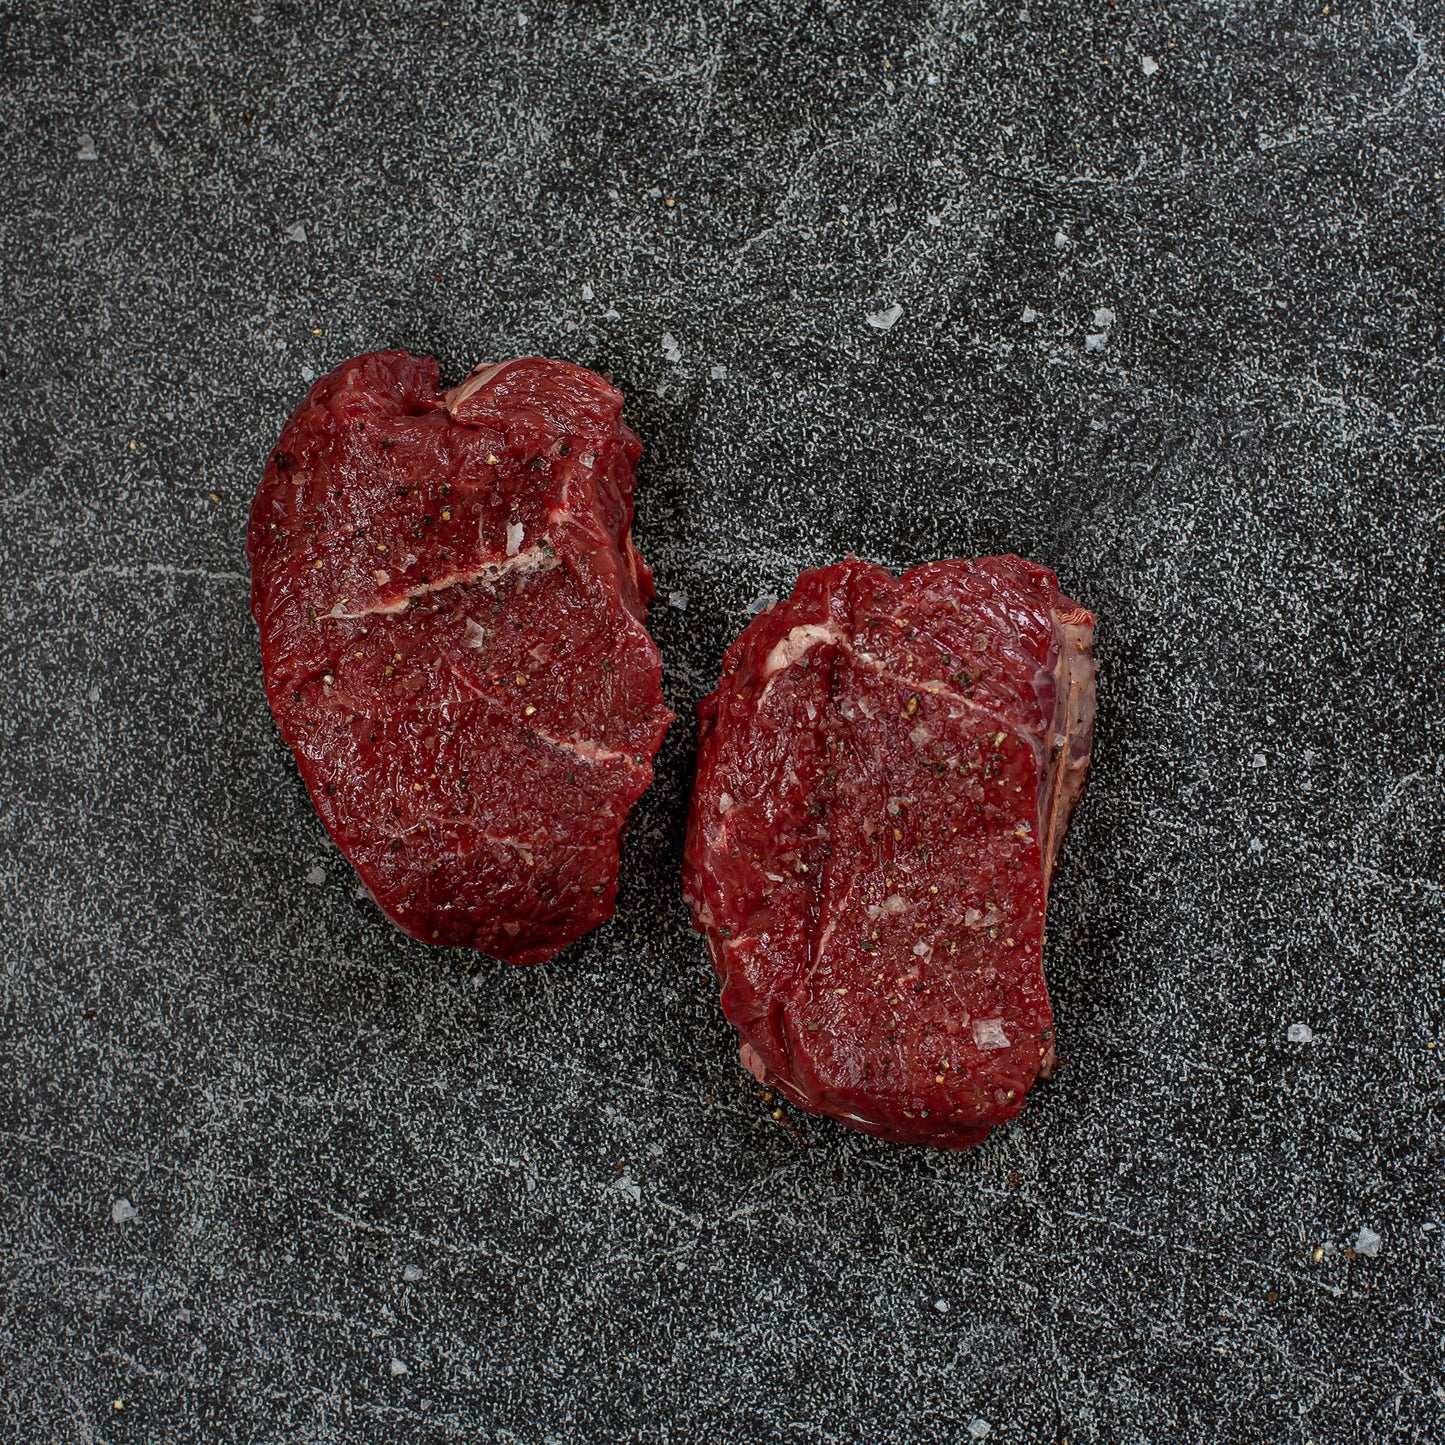 Grass Fed Sirloin Filet (Two Steaks)